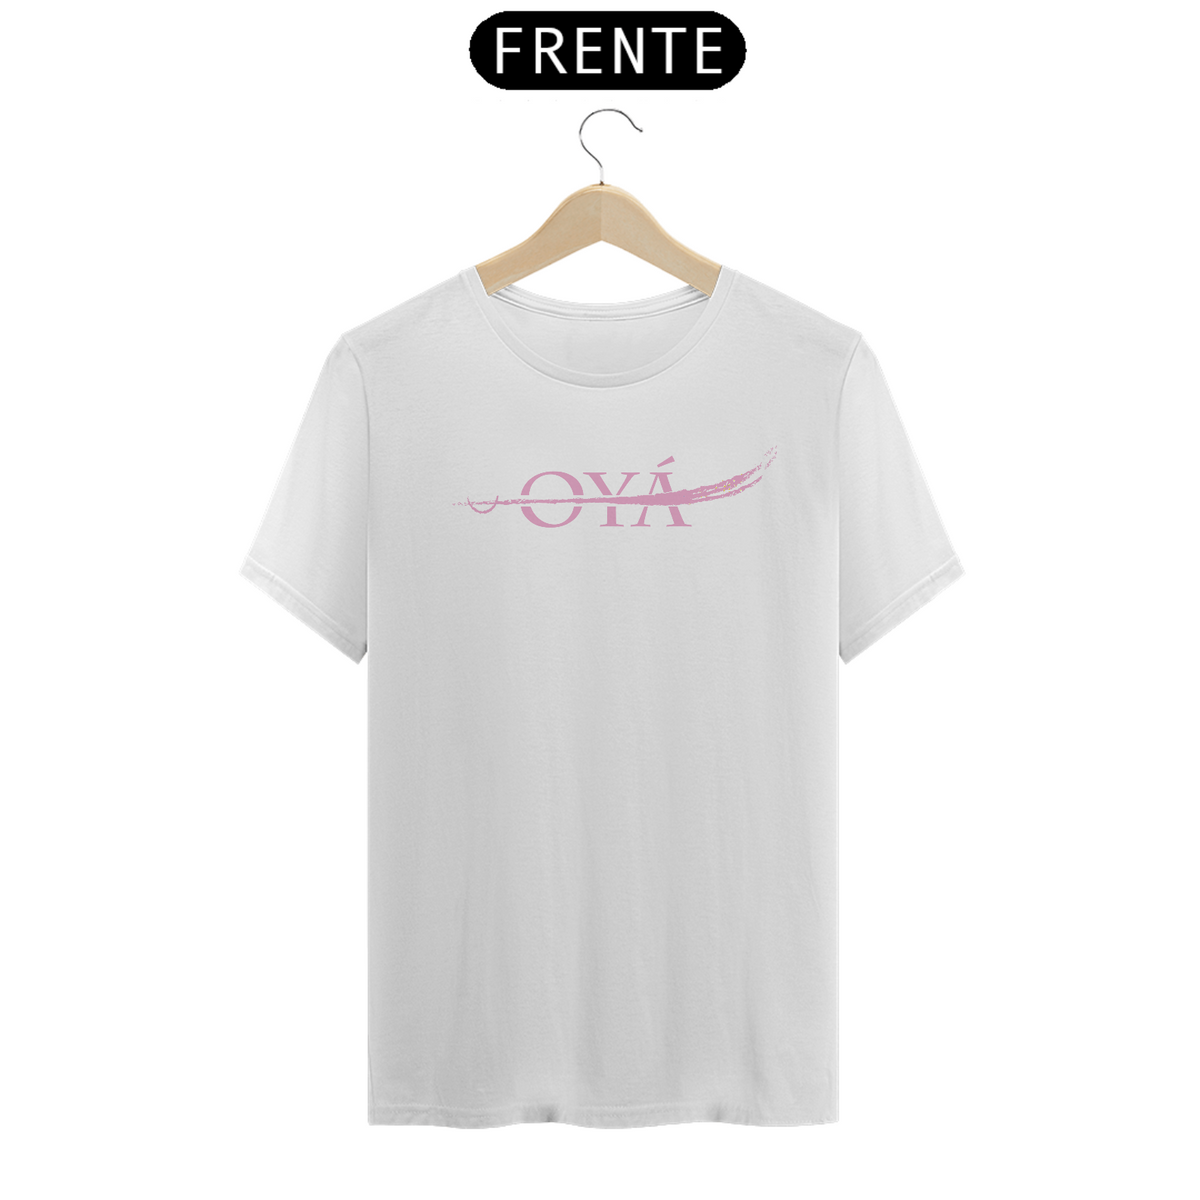 Nome do produto: T-Shirt Classic Branca - Okan Oyá